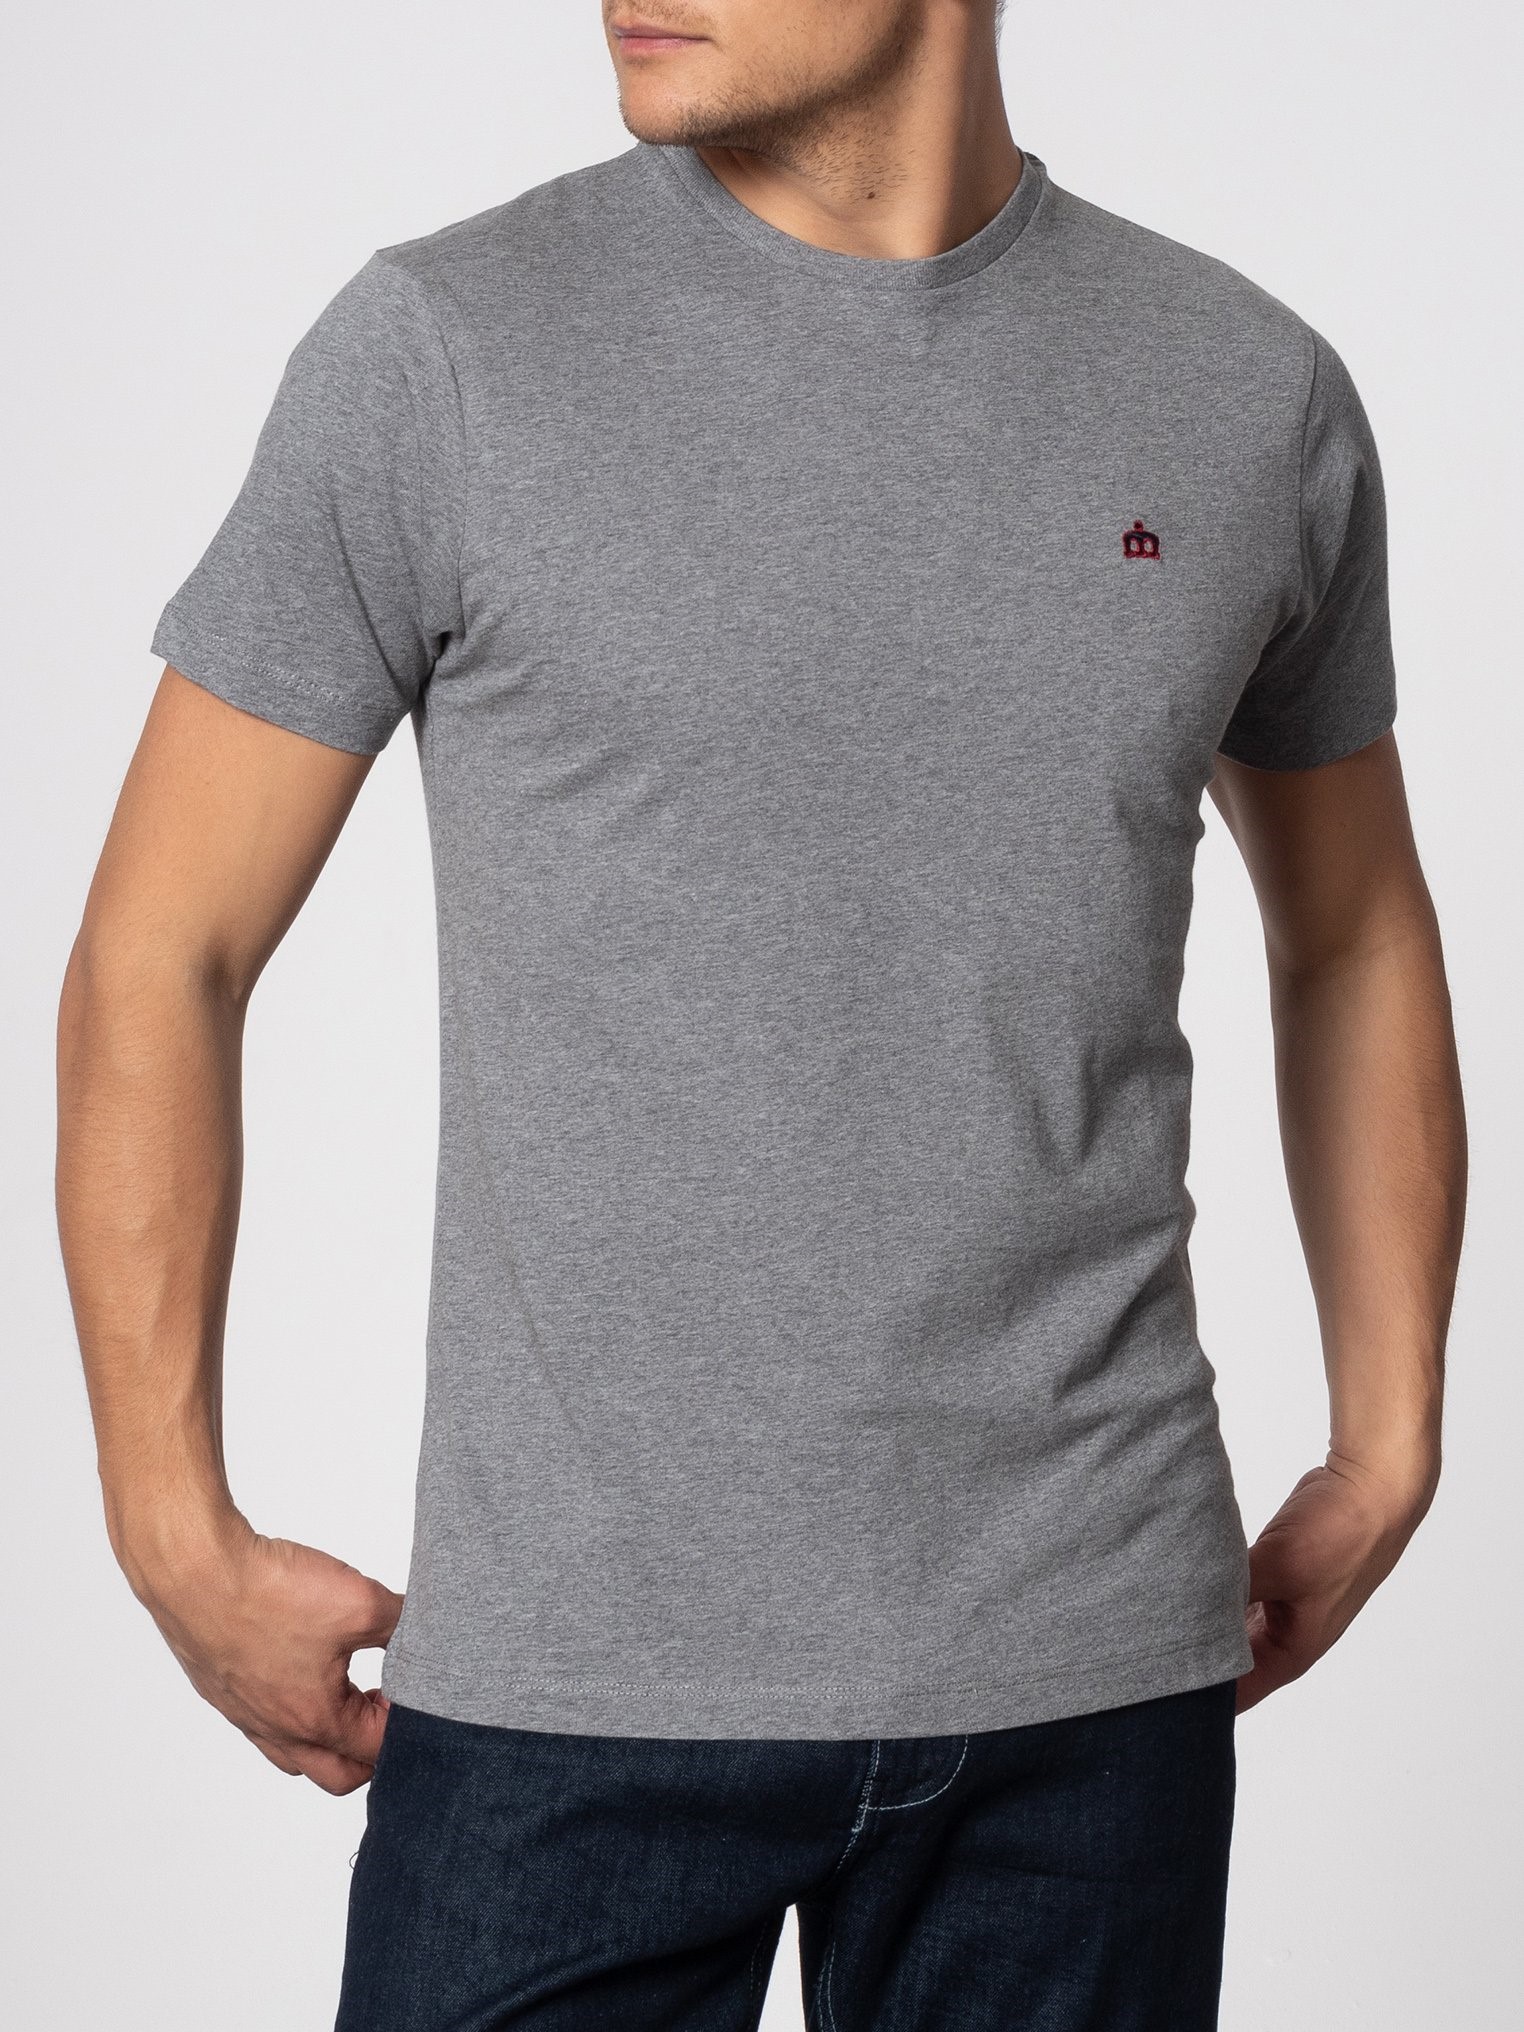 Однотонная мужская футболка Merc Keyport с вышитым на груди контрастным логотипом Корона, серая, купить на официальном сайте 